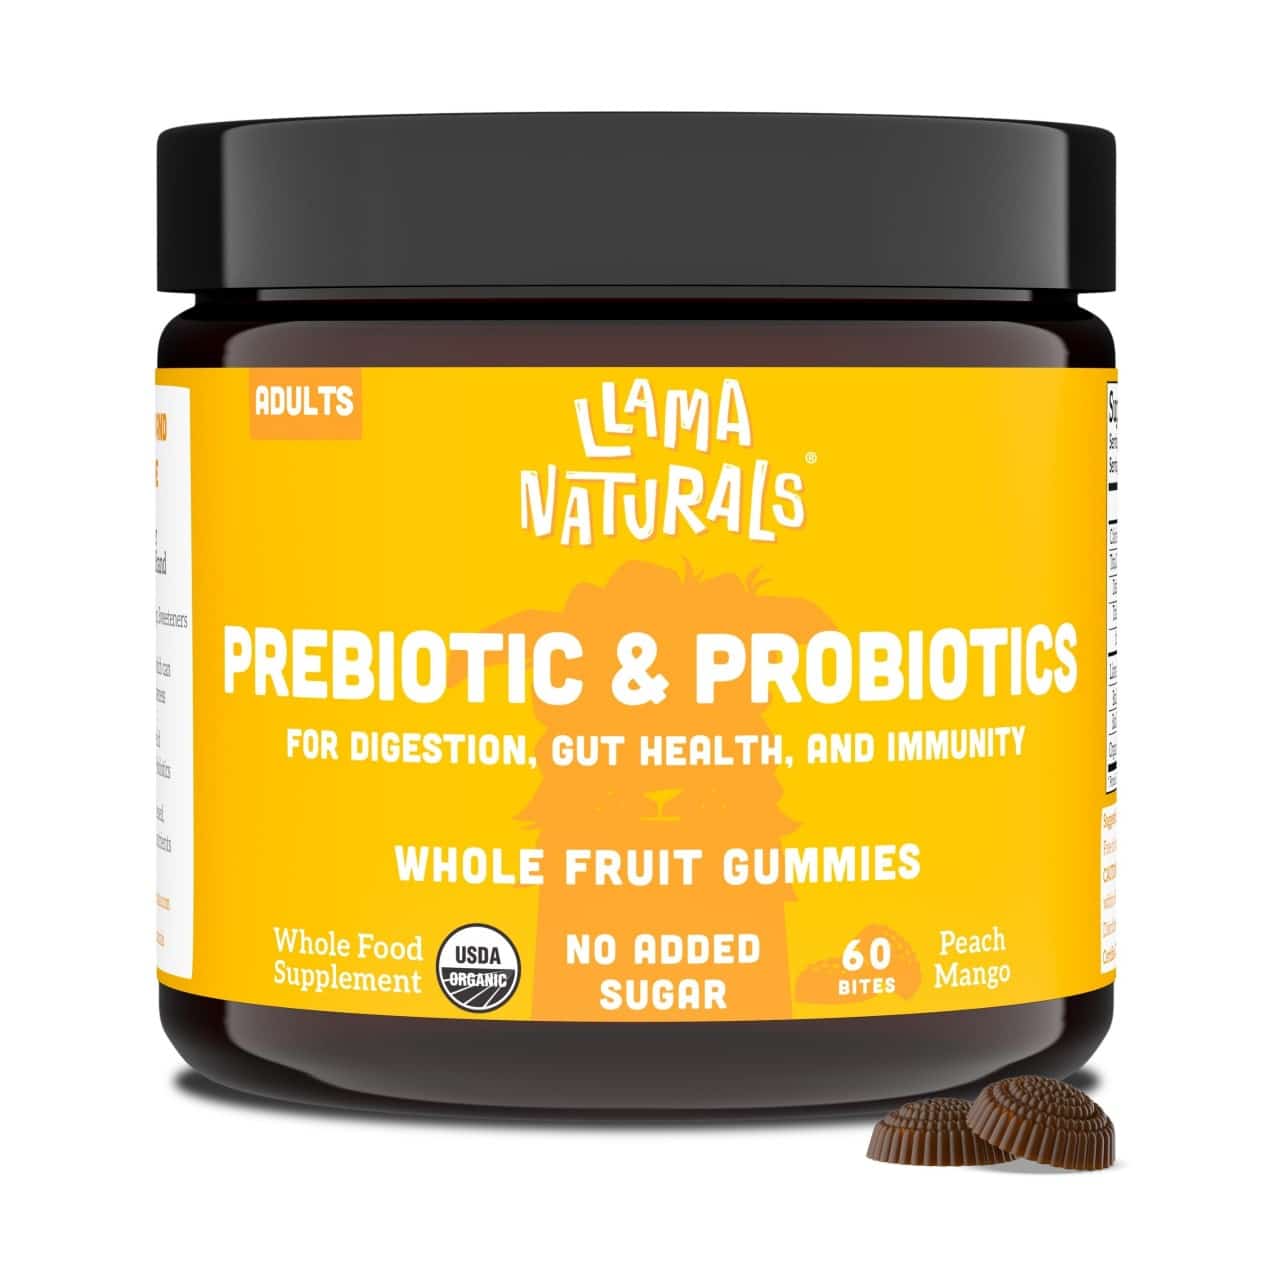 Llama Naturals Adults Vitamin Gummy Bites – Pre/Probiotics – Peach Mango